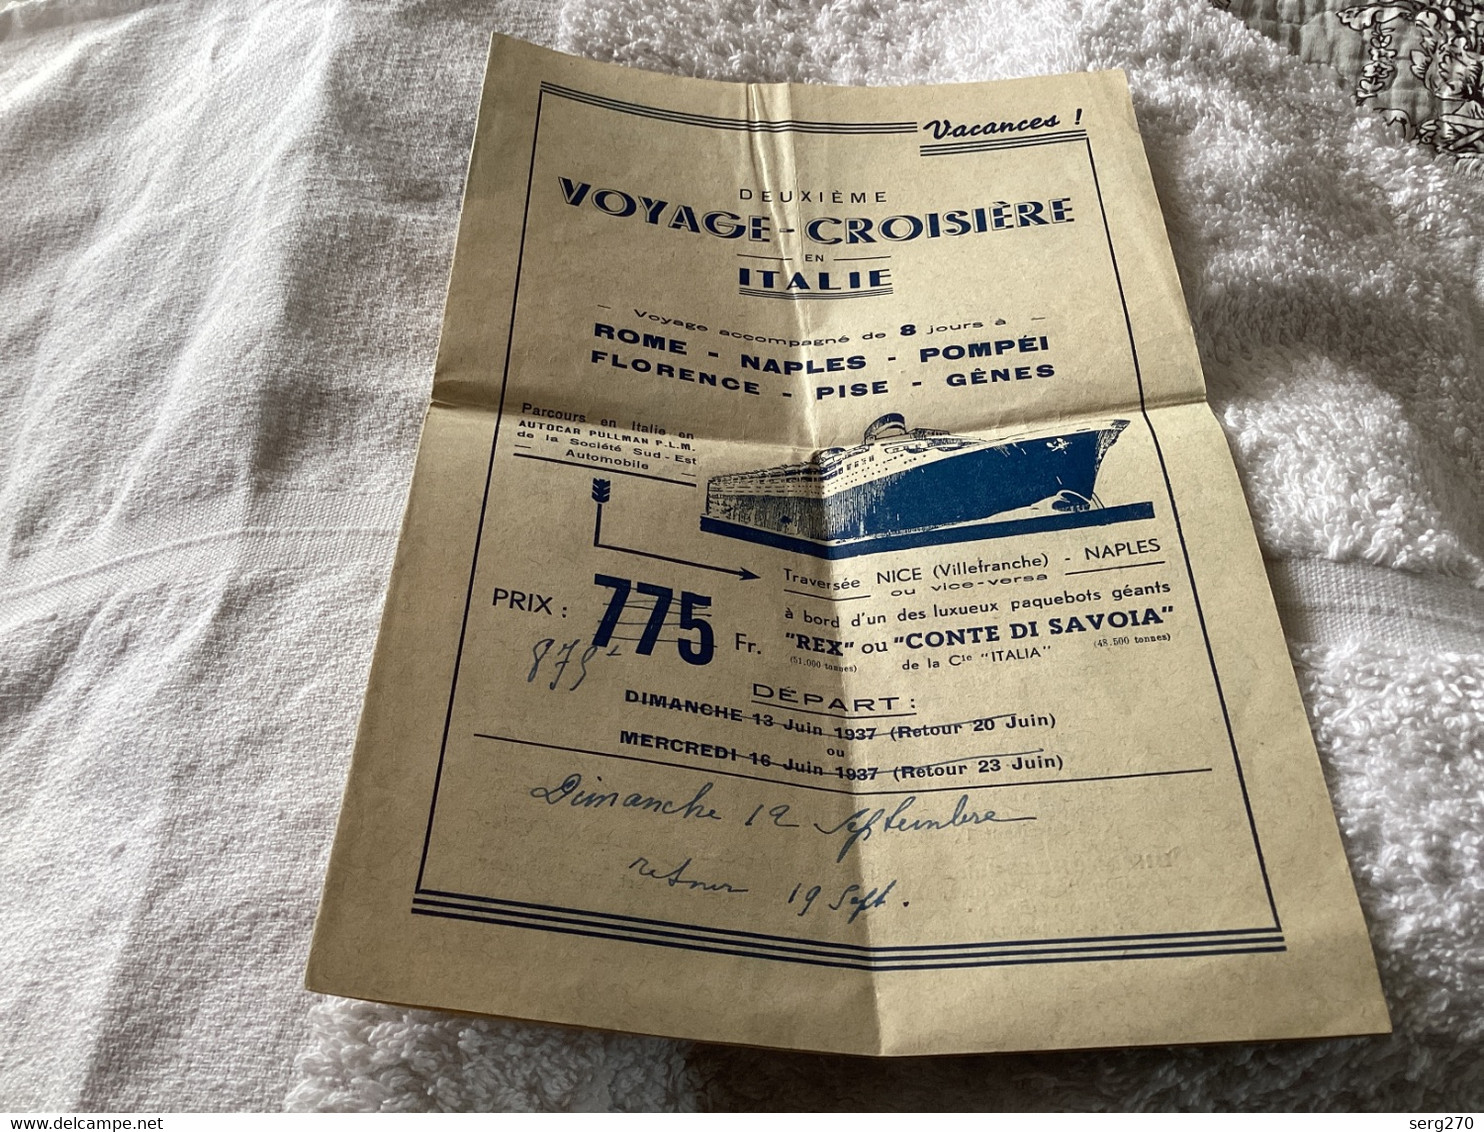 Deuxième Voyage Croisière, En Italie, Vacances, Rome, Naples, Pompéi, Florence, Pise Gênes Bateaux 1937 Nice Villefranch - Programme